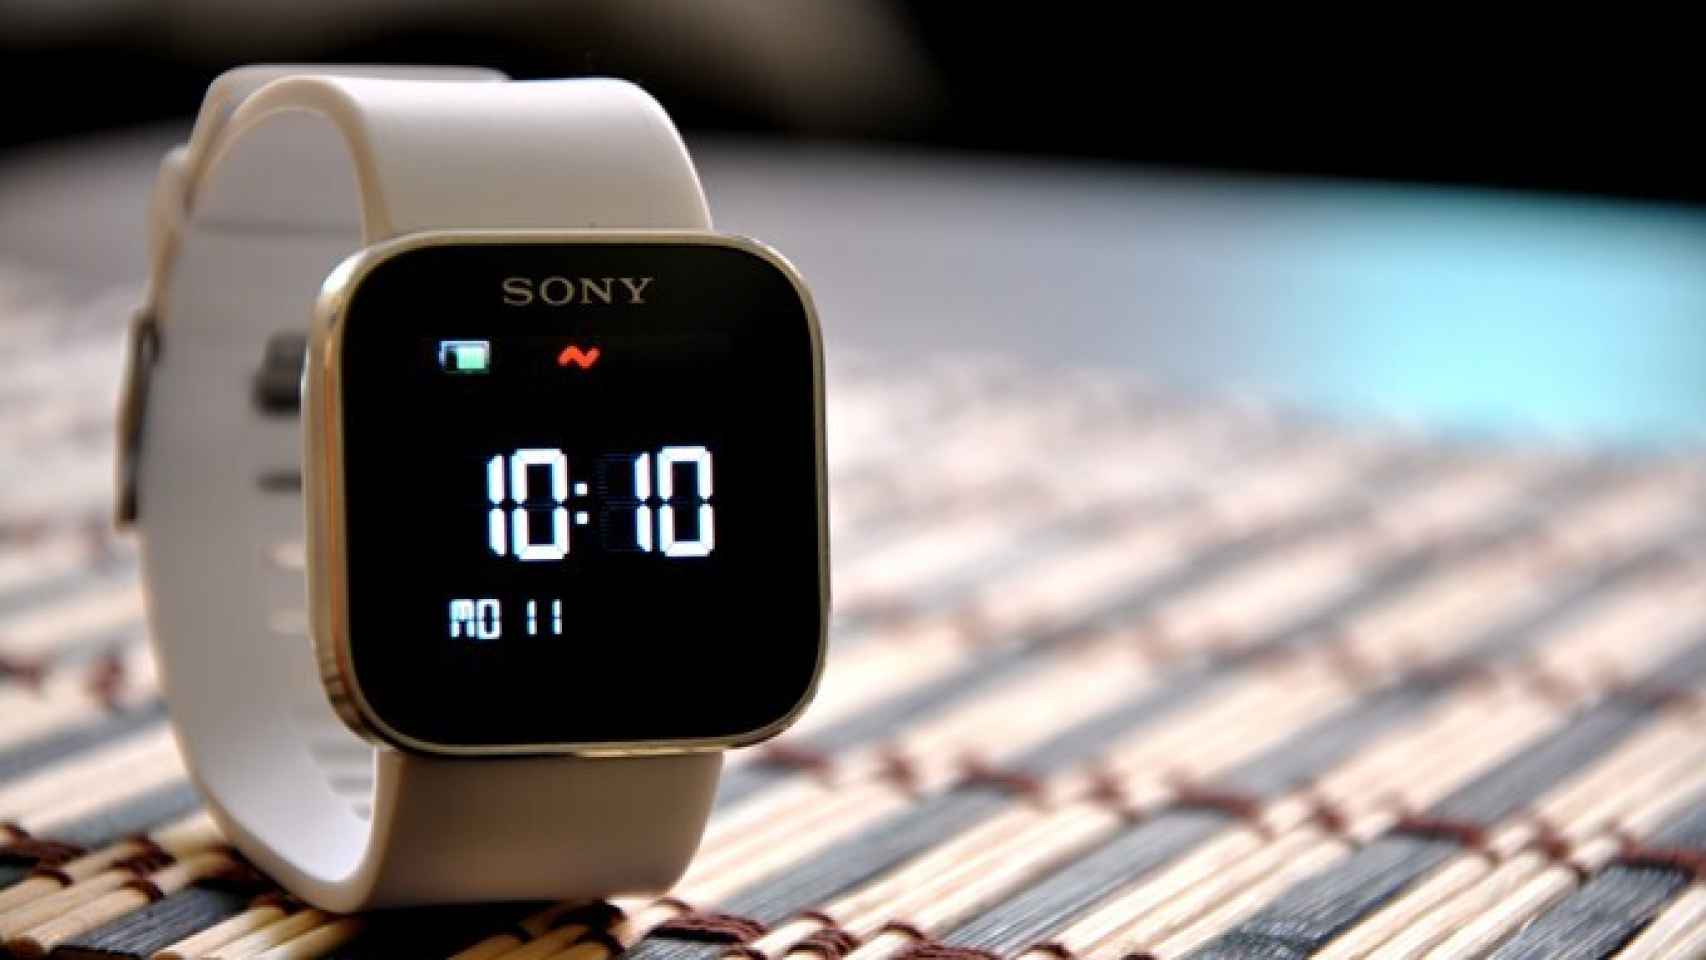 Separación sacudir lobo Sony SmartWatch: Análisis a fondo y experiencia de uso del reloj  inteligente con Android